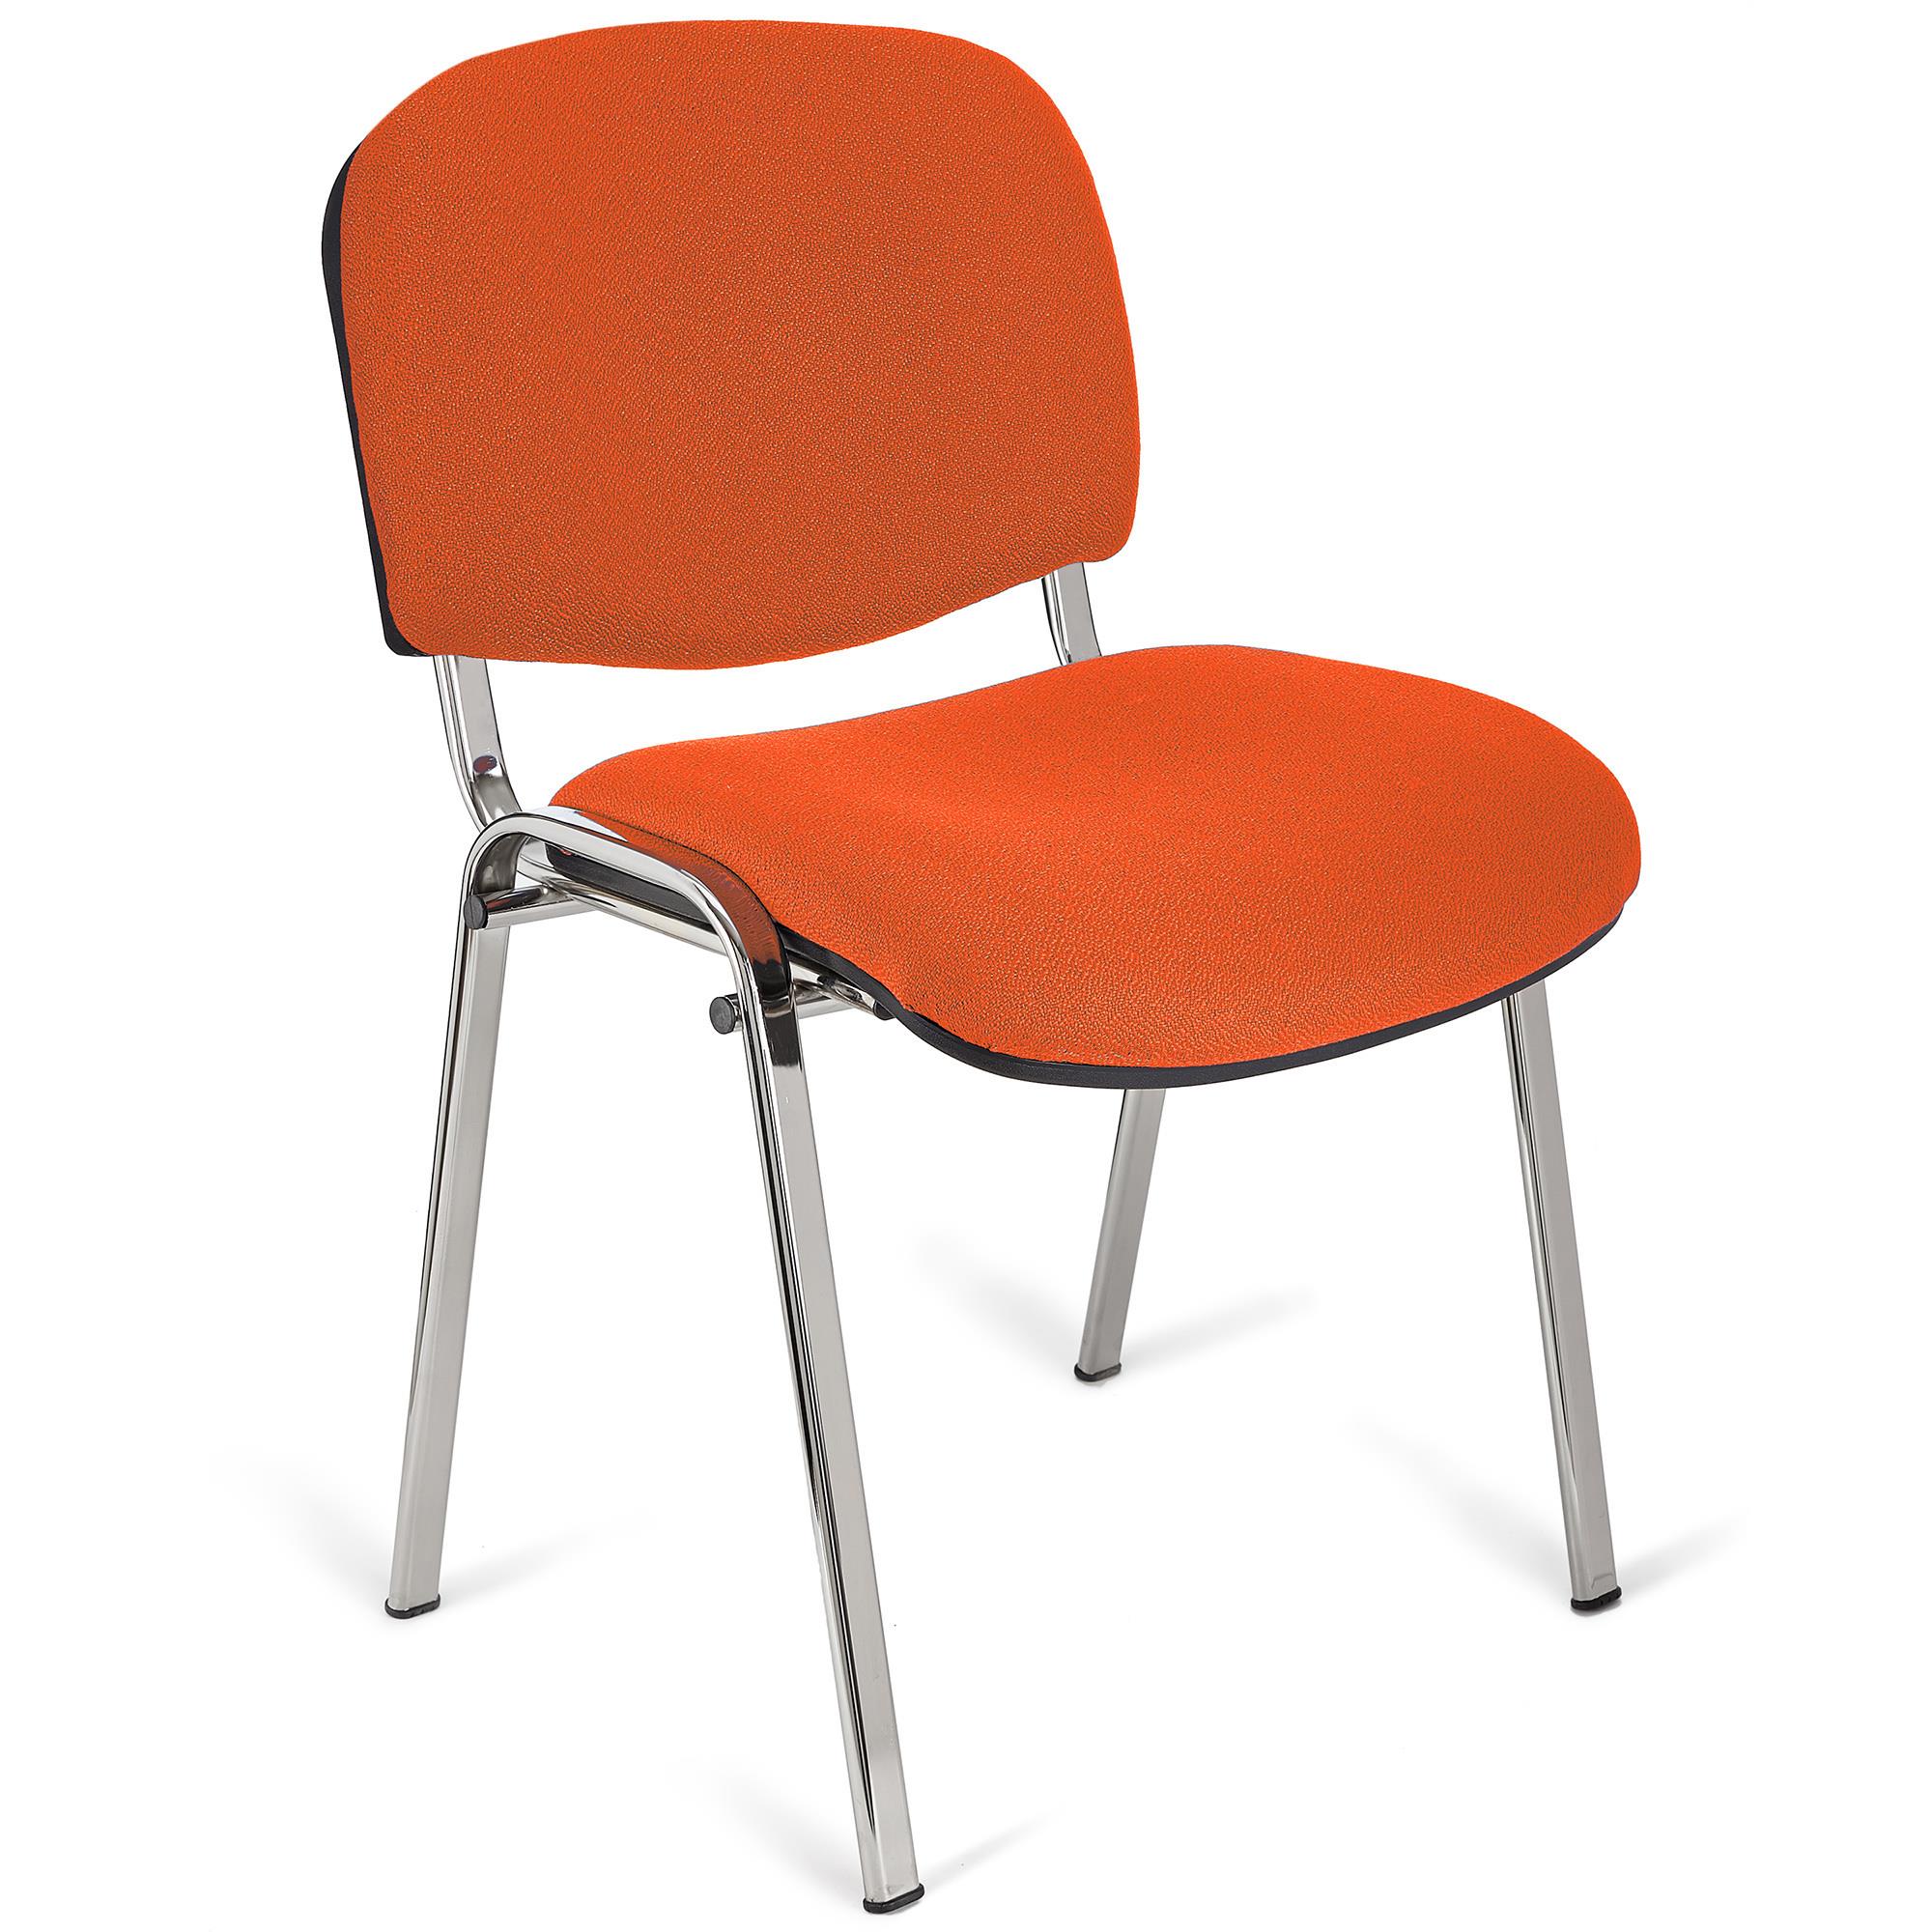 Konferenzstuhl MOBY BASE mit verchromten Stuhlbeinen, bequem und praktisch, stapelbar, Farbe Orange